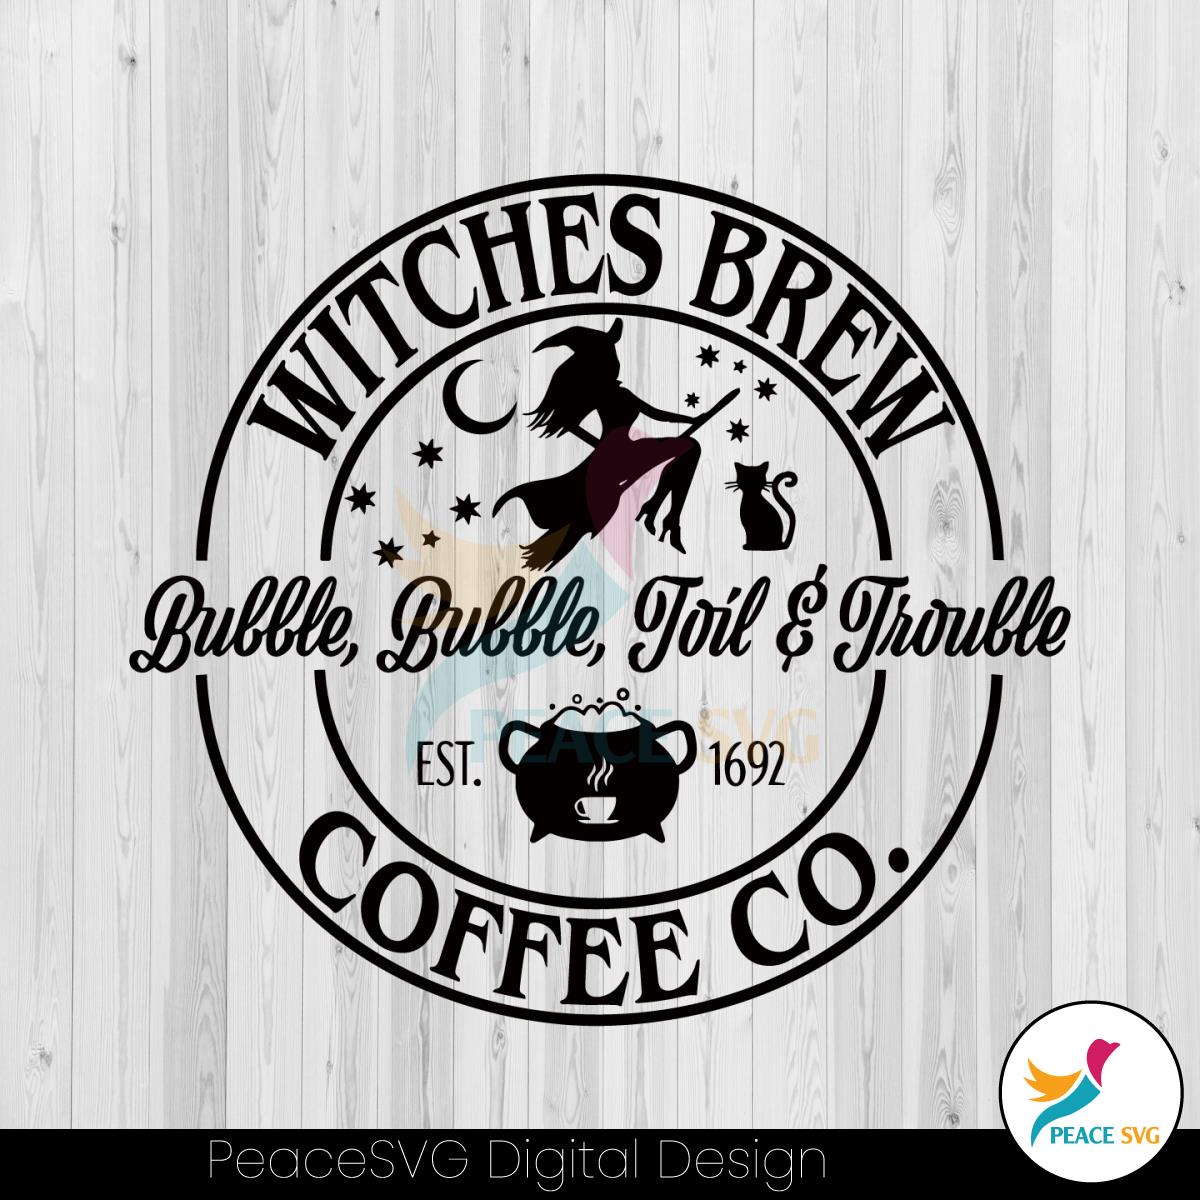 vintage-witches-brew-coffee-co-est-1692-svg-cricut-file